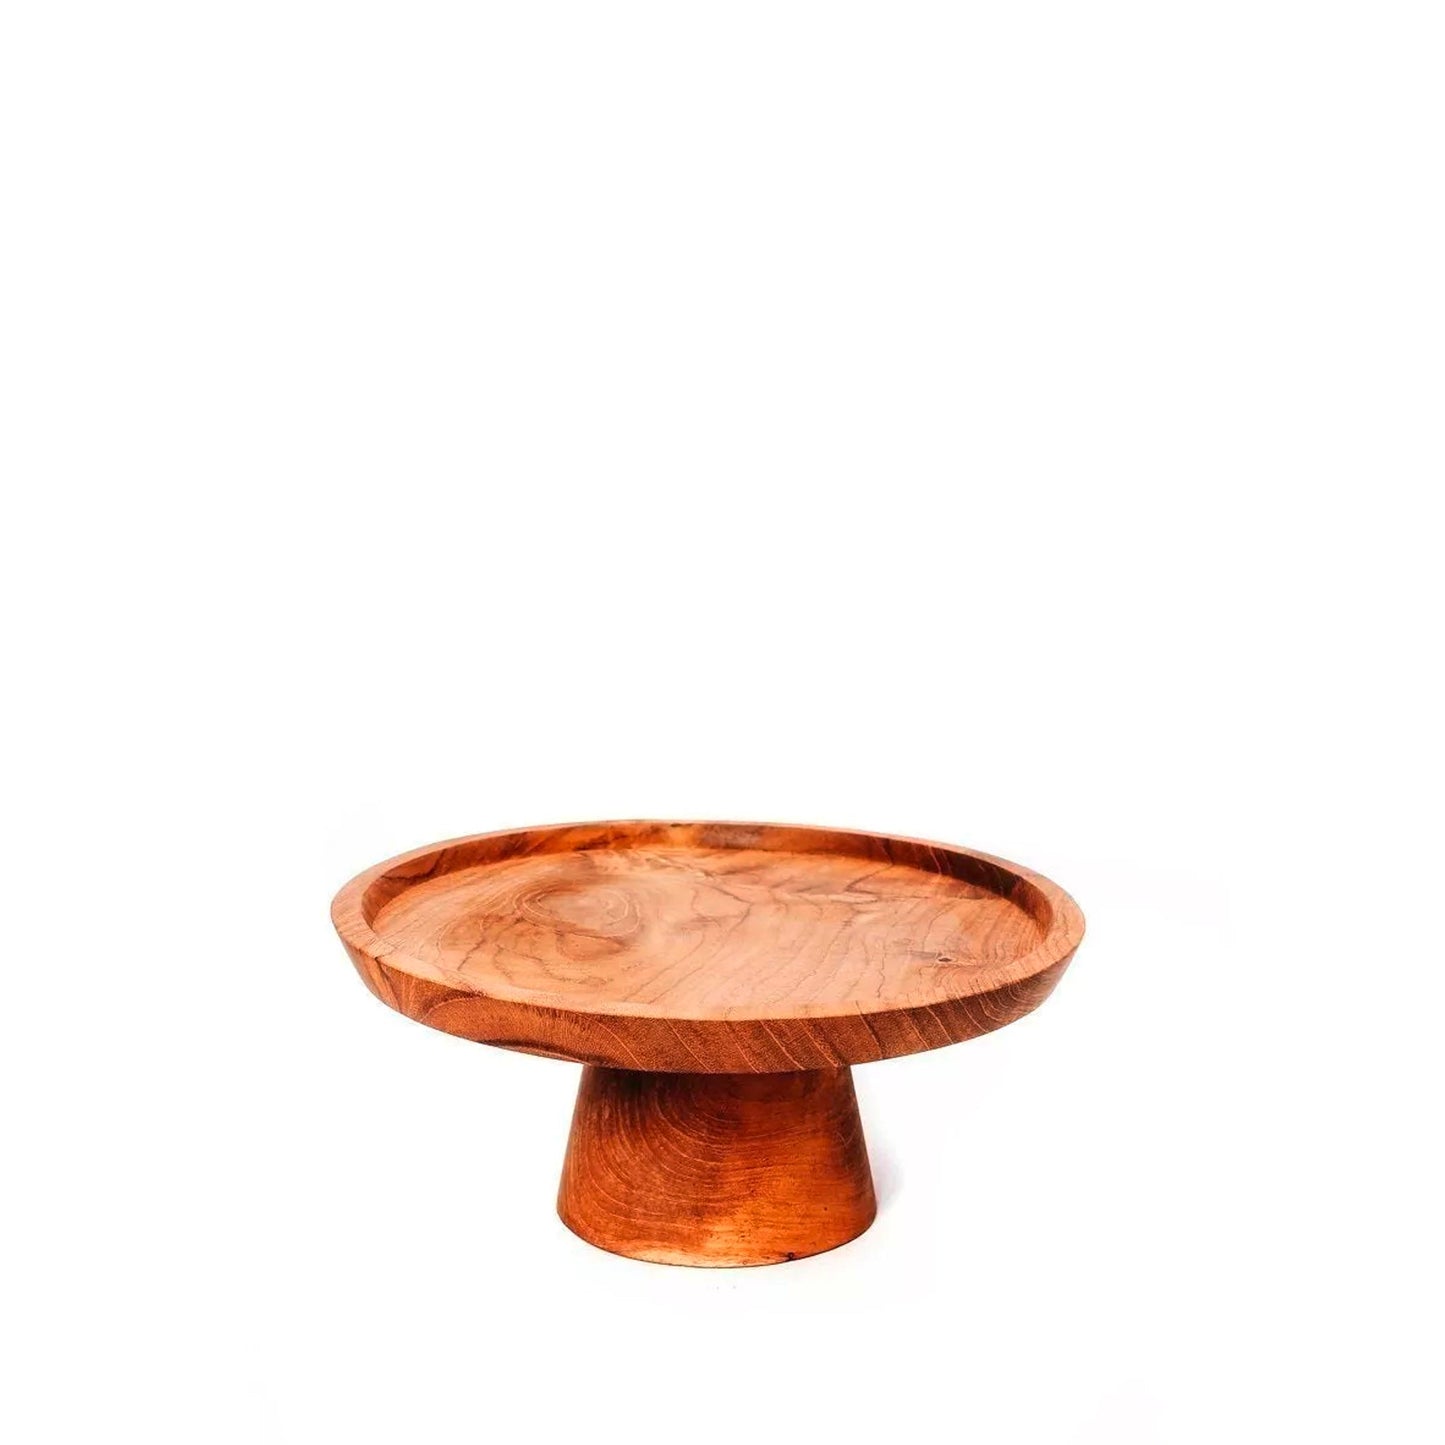 Etagere aus Holz - 20 cm Durchmesser - Vandeley